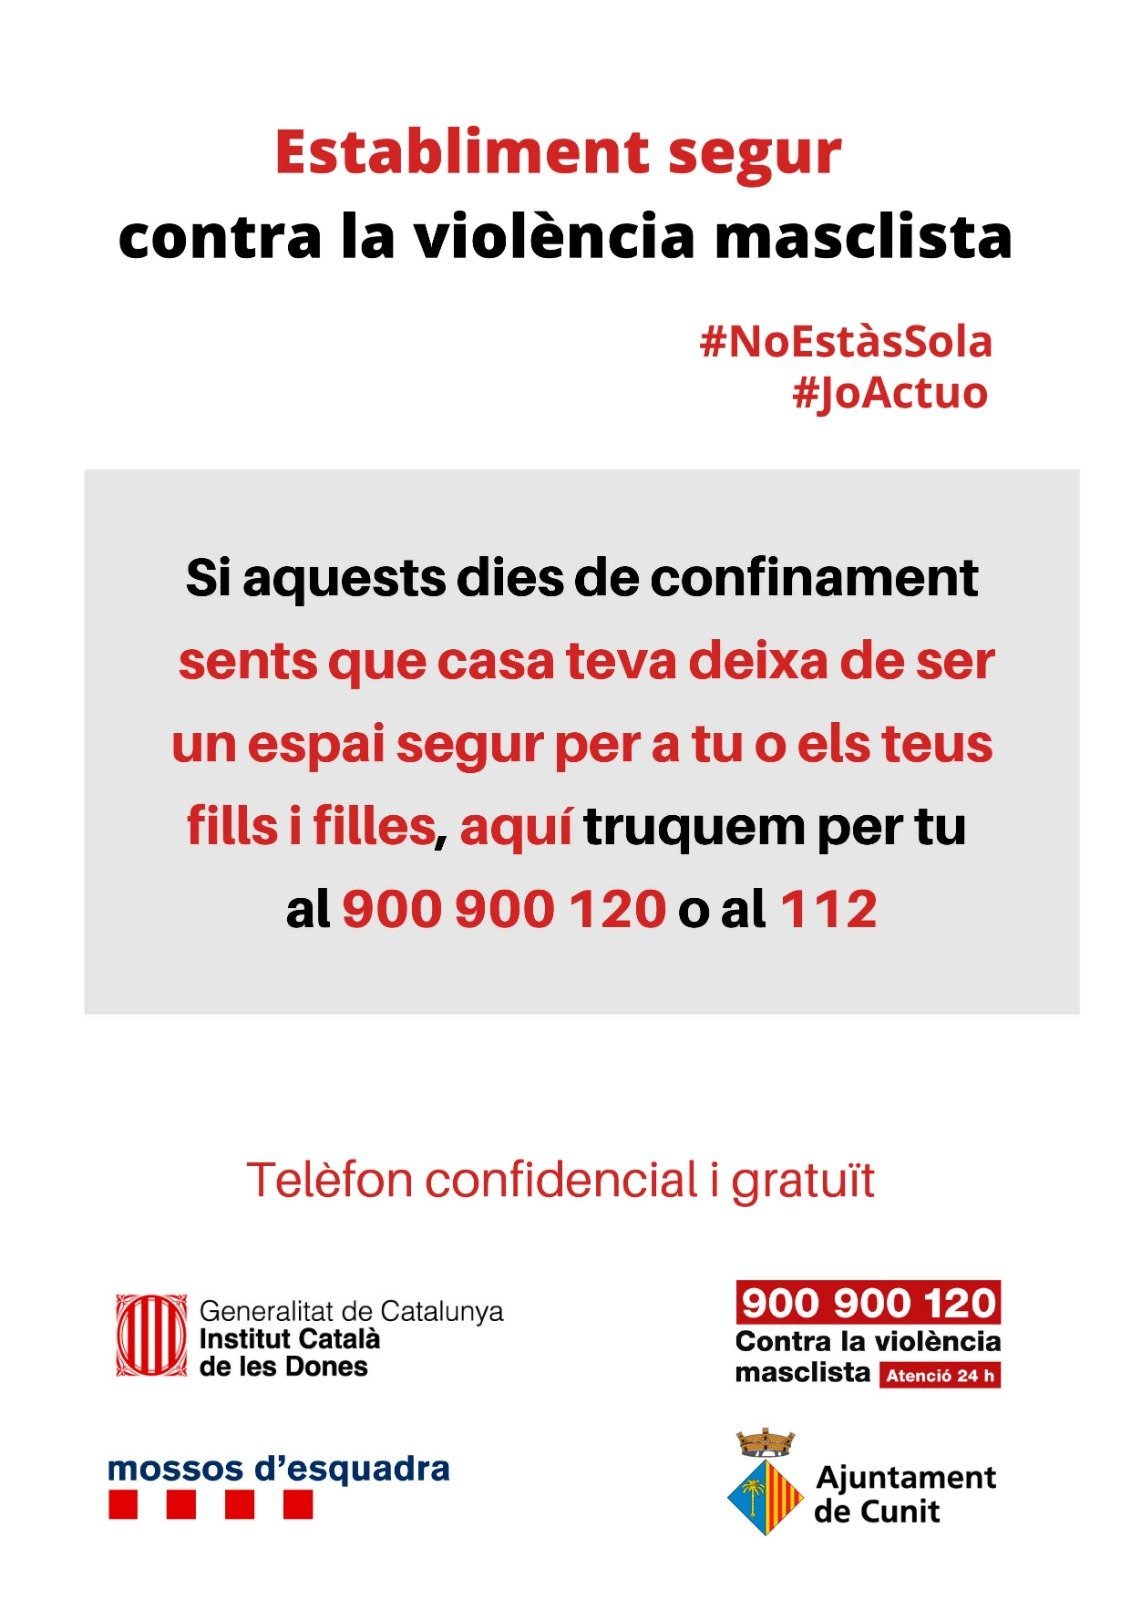 Read more about the article “Per un establiment segur contra la violència masclista”